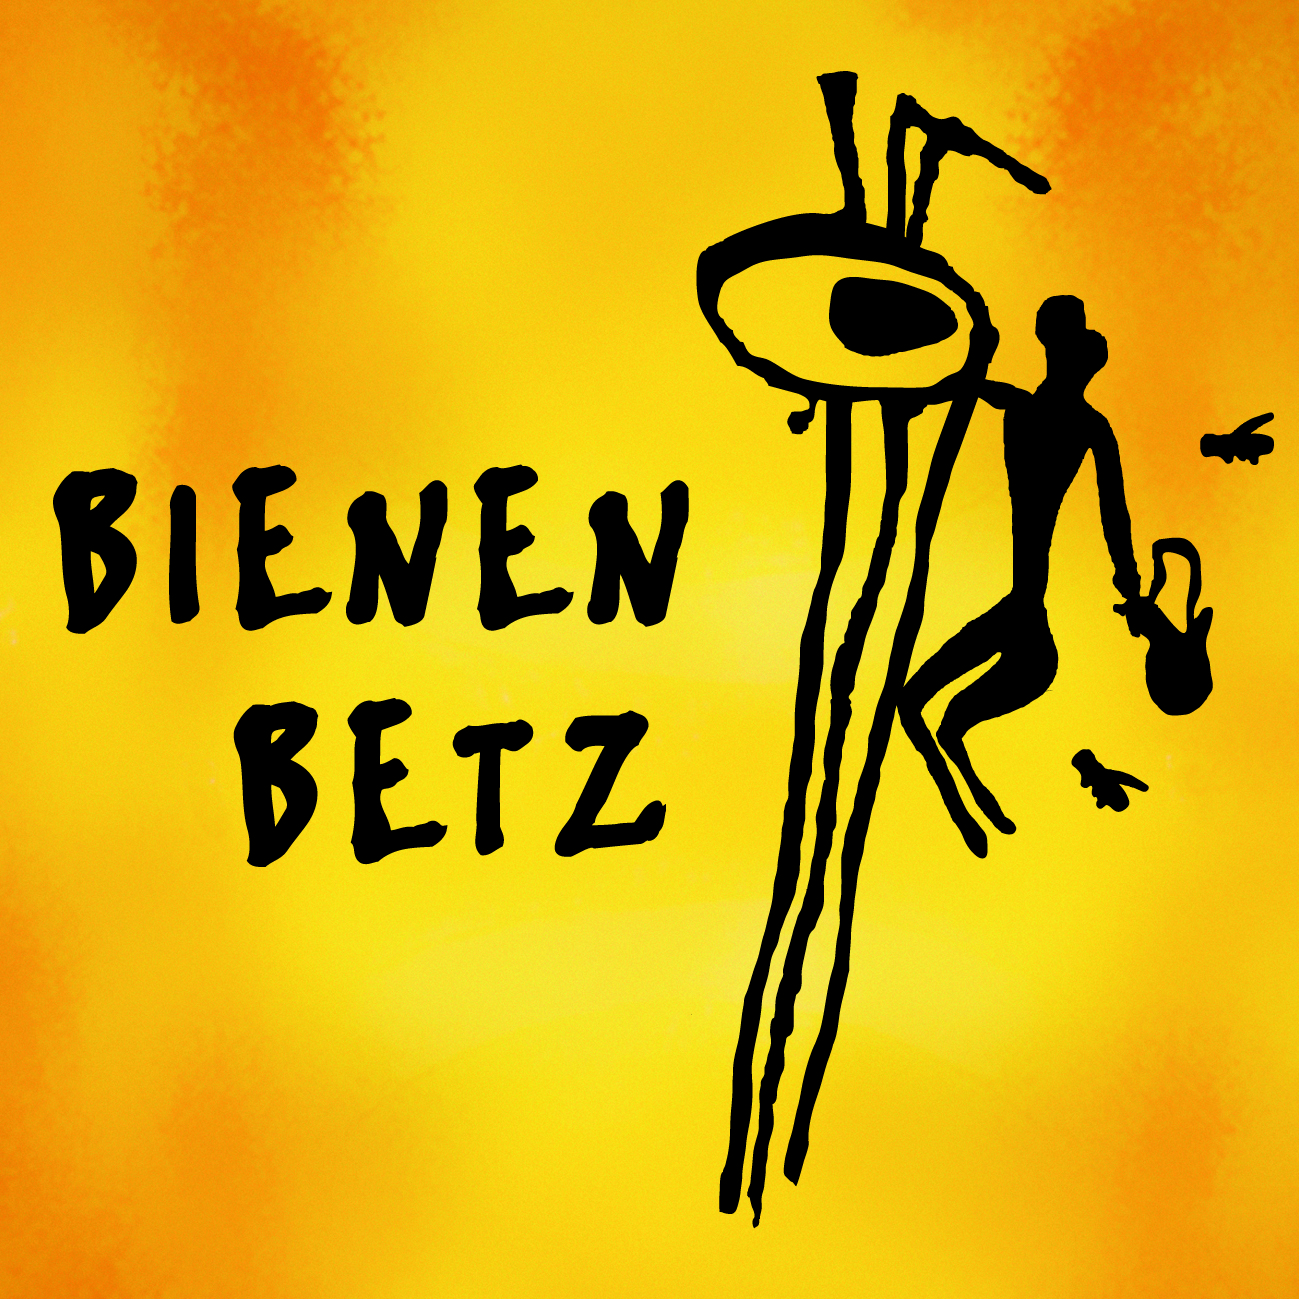 logo_betz_2.jpg - 1.49 MB